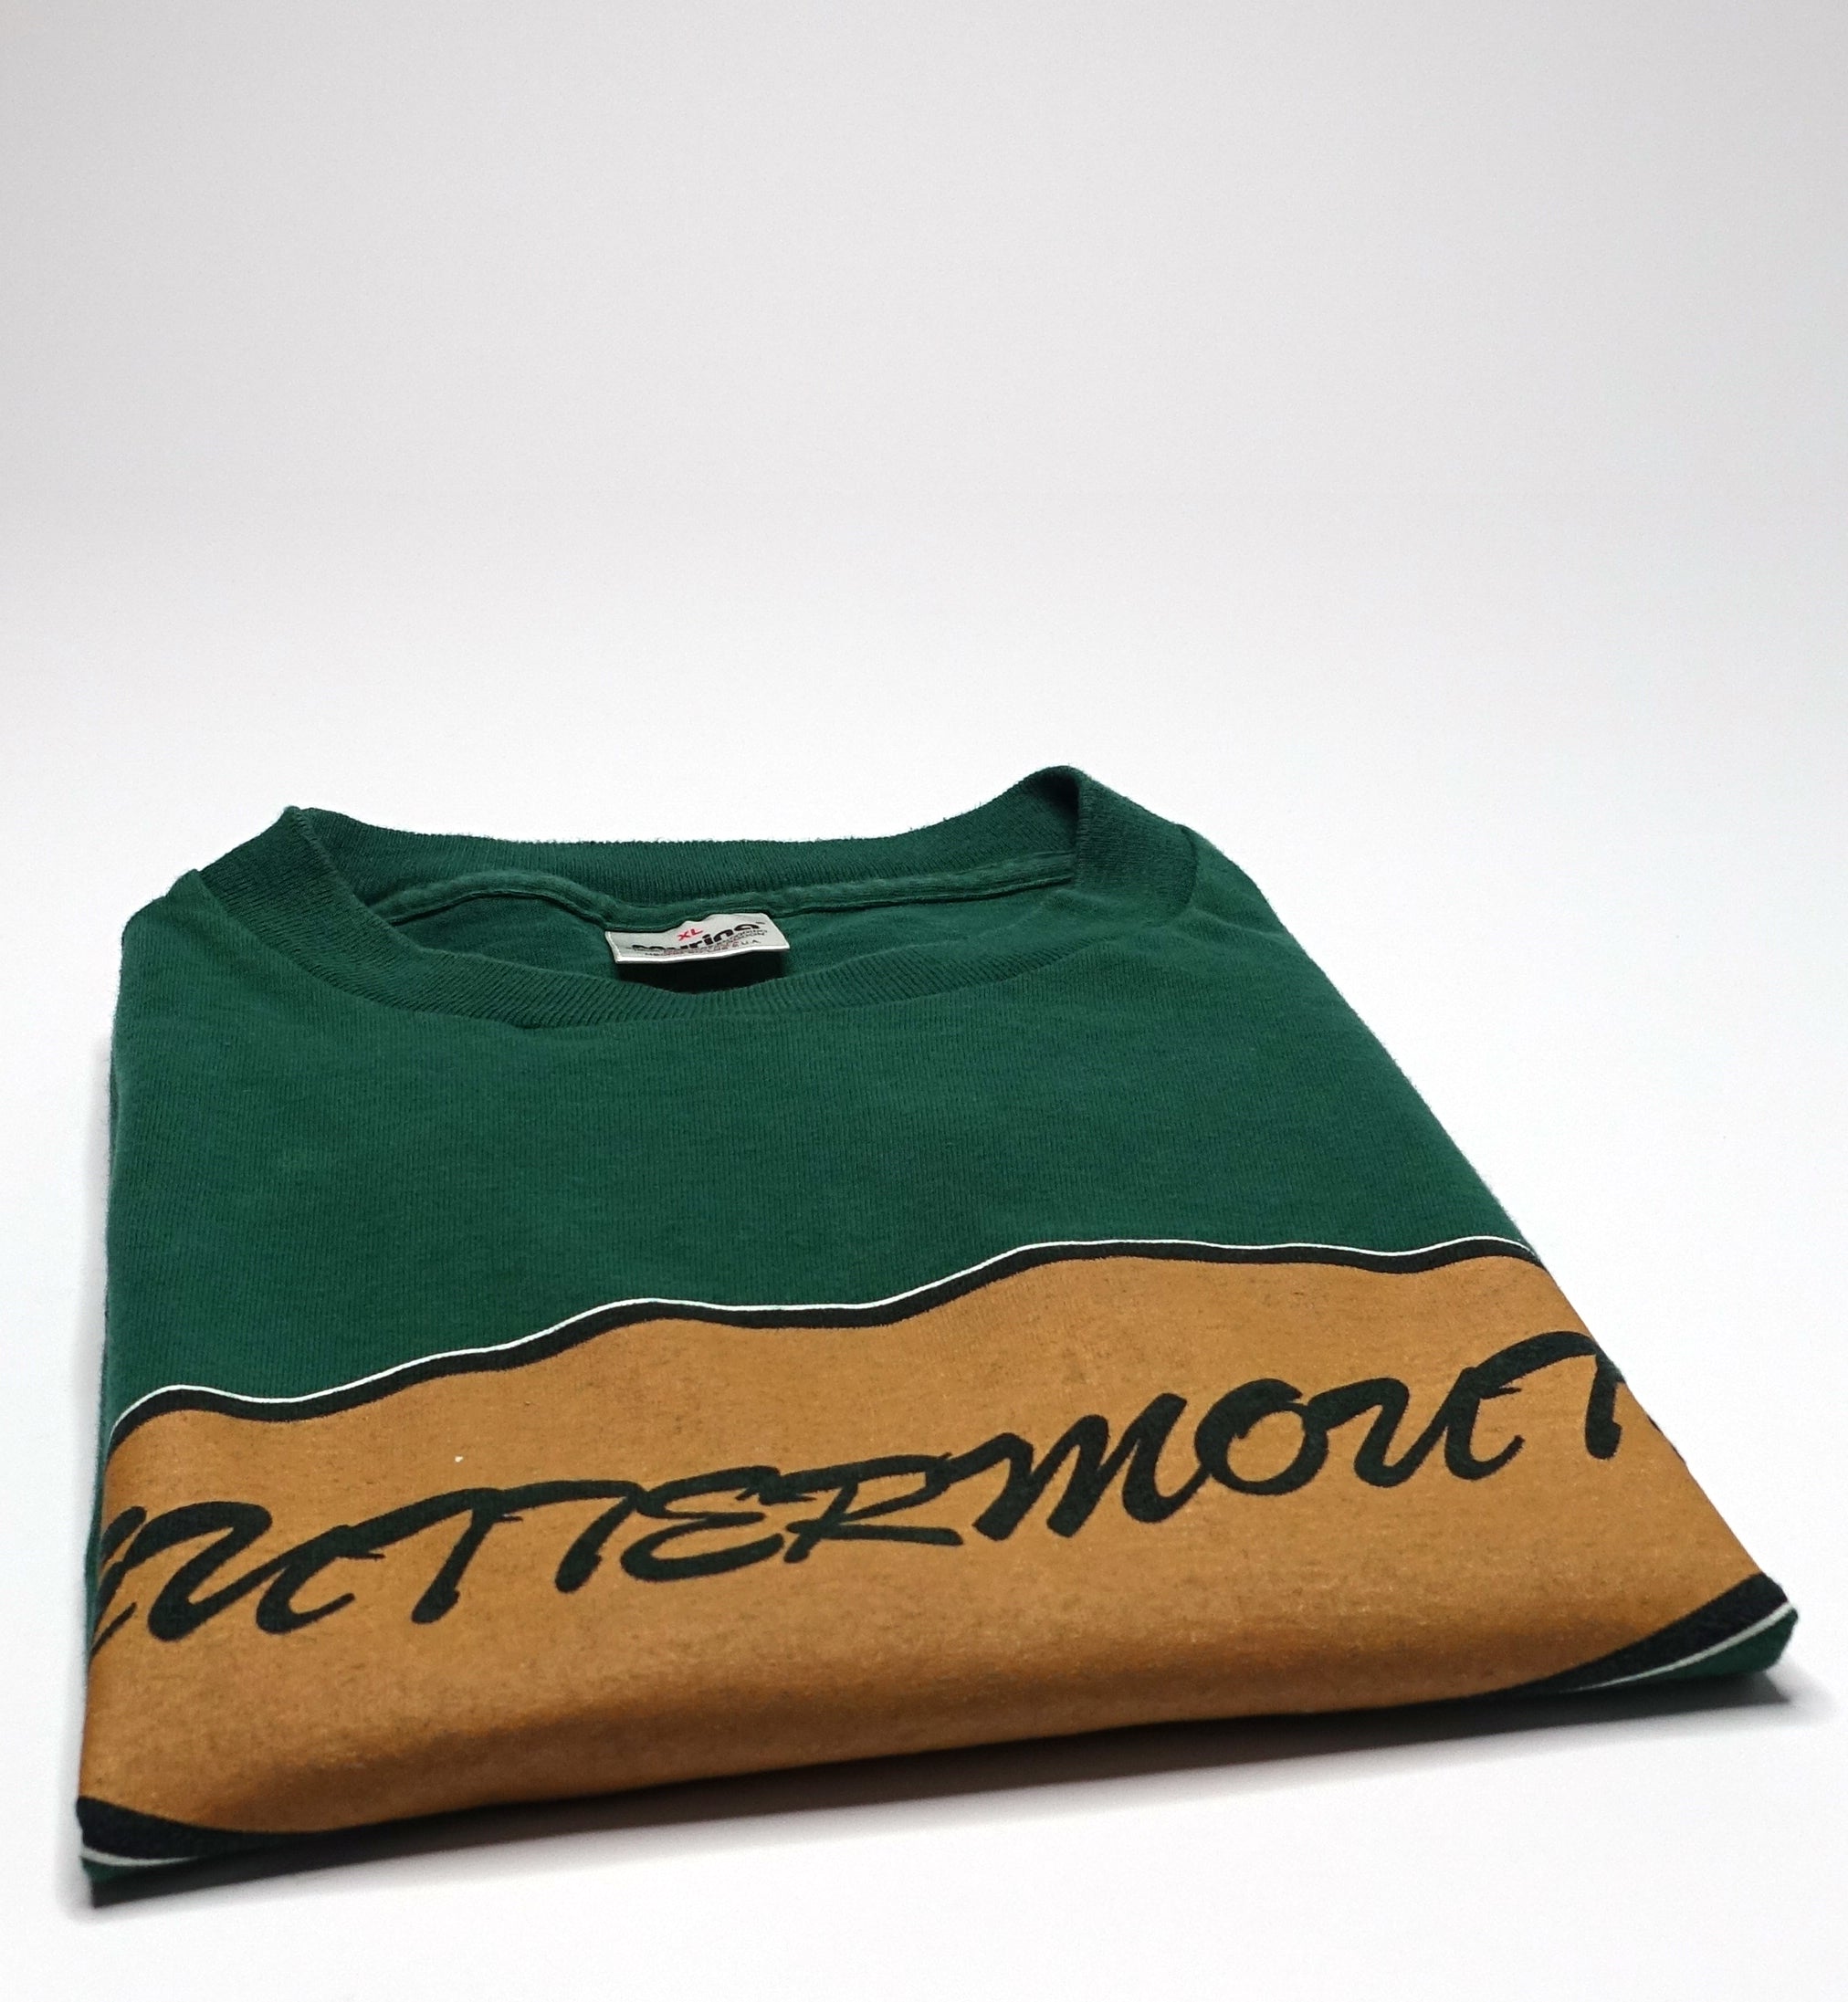 Guttermouth - 10 Commandments of De-Punking 90's Tour Shirt Size XL